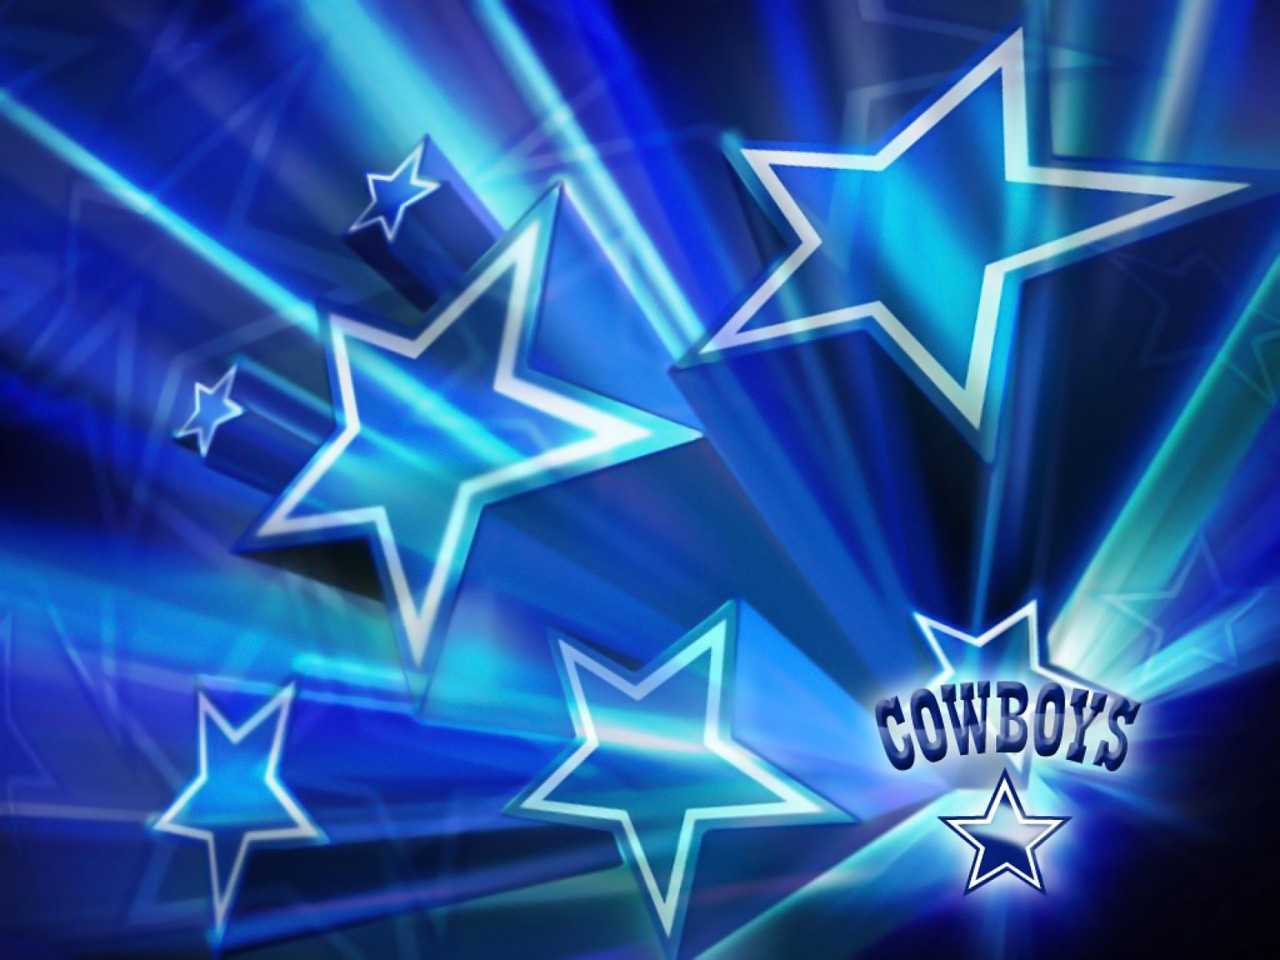 More Dallas Cowboys wallpapers